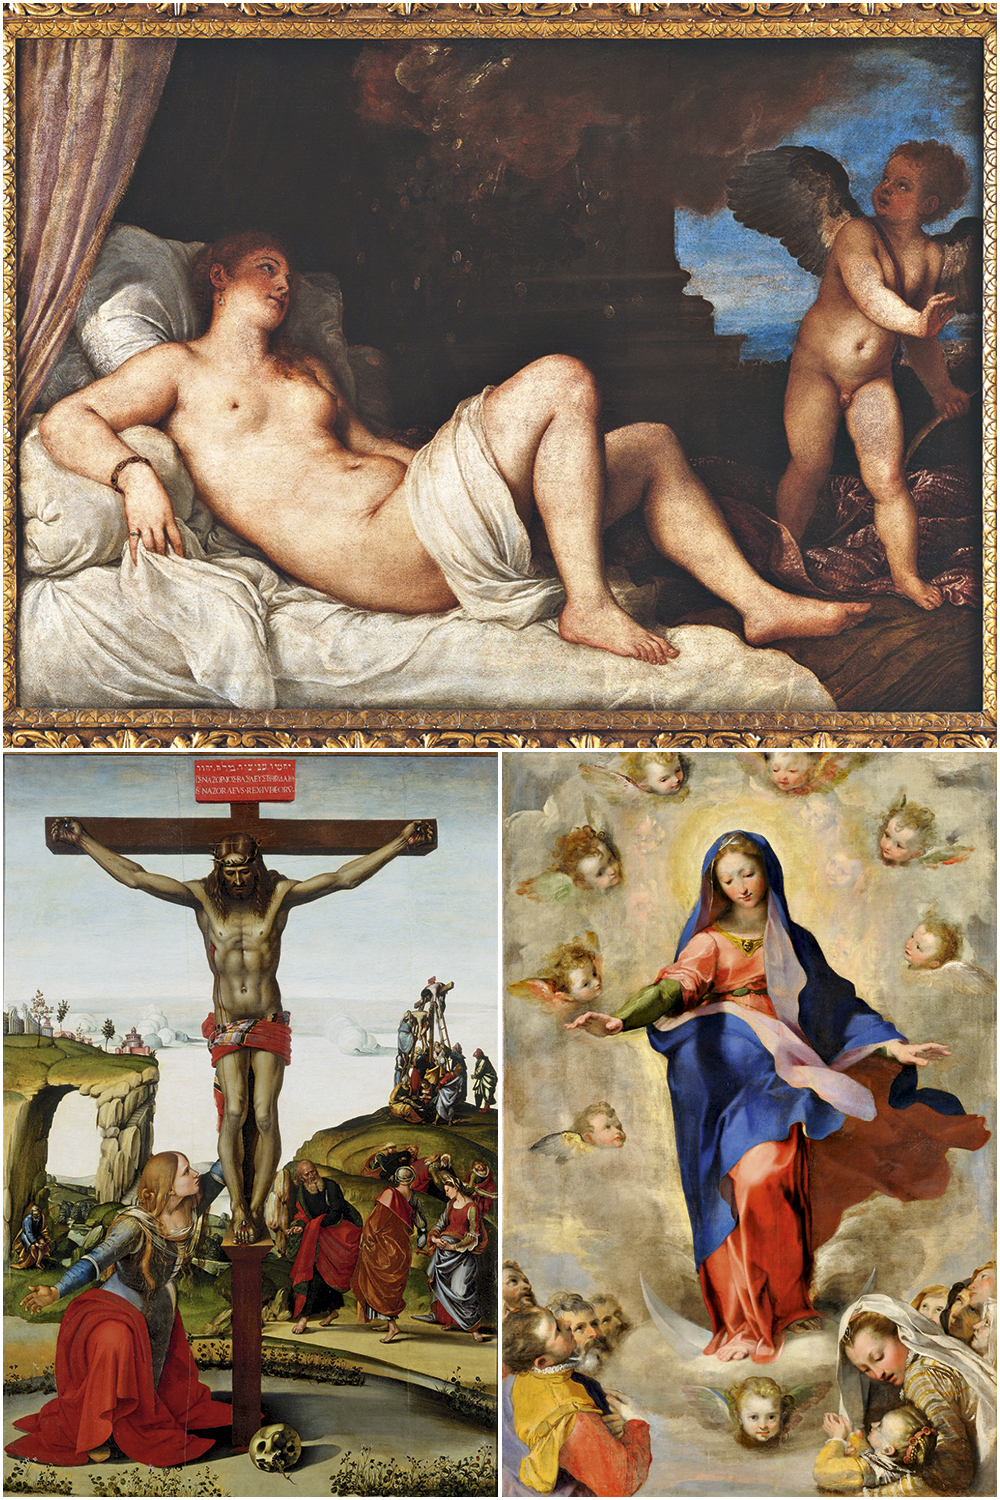 TIRADAS DO FOGO CRUZADO - Obras resgatadas durante a guerra: no alto, Danae (1544-1545), de Tiziano; acima, à esquerda, Imaculada Conceição (1575), de Federico Barocci; à dir., Crucifixo e Santa Maria Madalena (1500-1505), de Luca Signorelli -